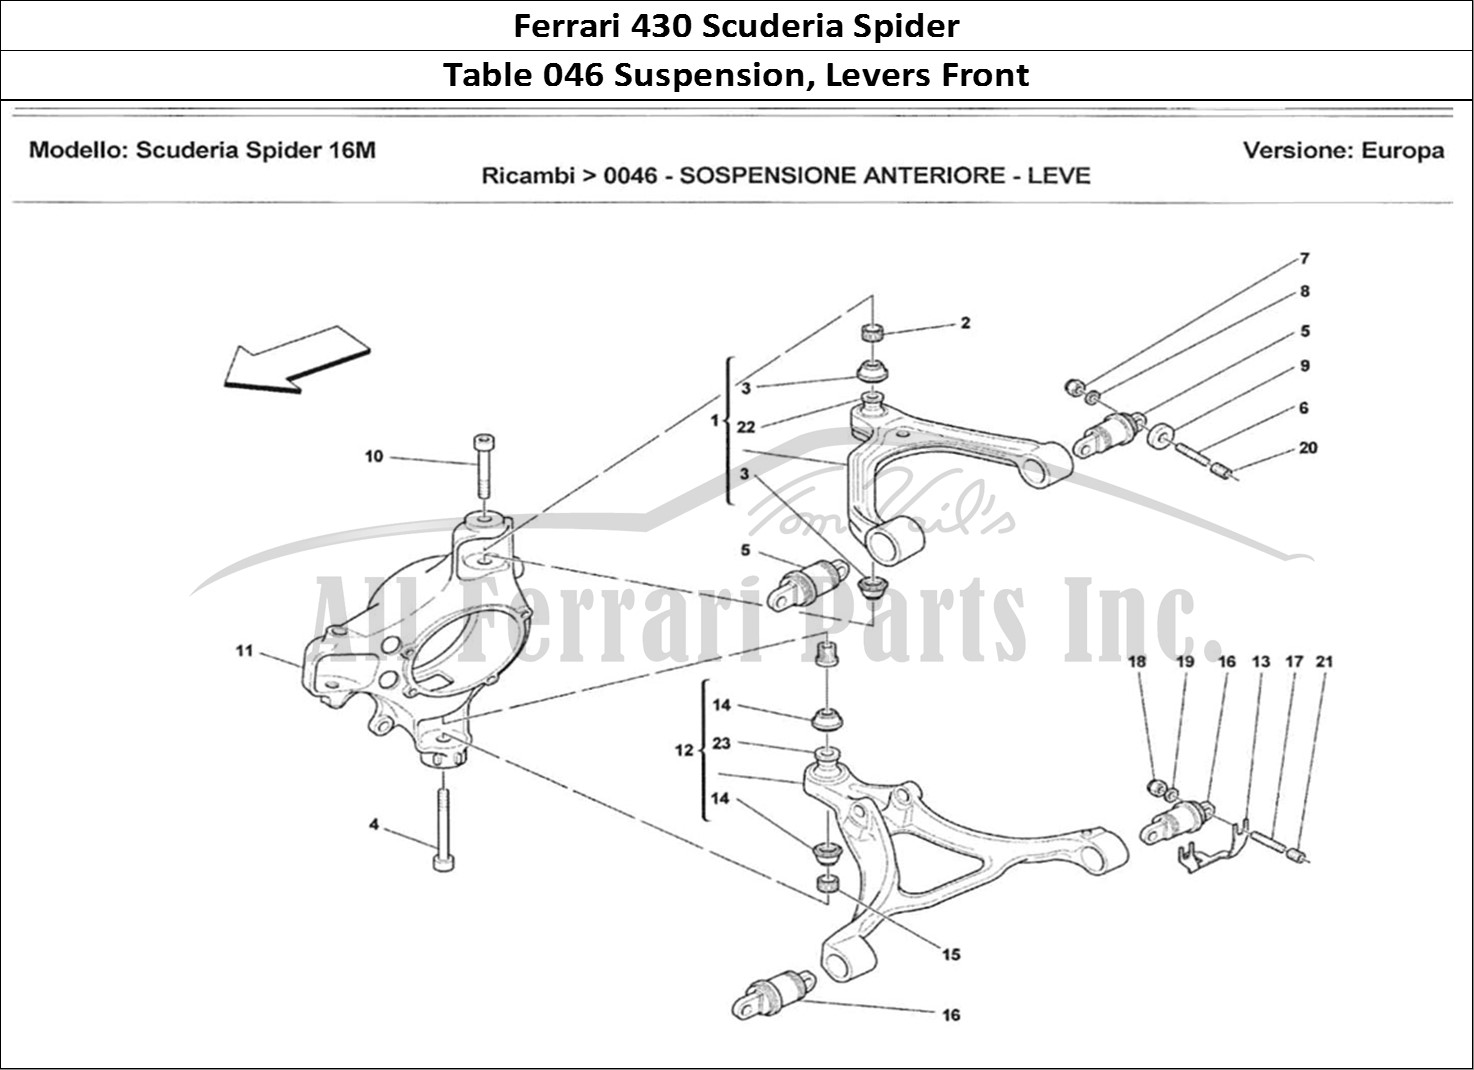 Ferrari Parts Ferrari 430 Scuderia Spider 16M Page 046 Sospensione Anteriore - L